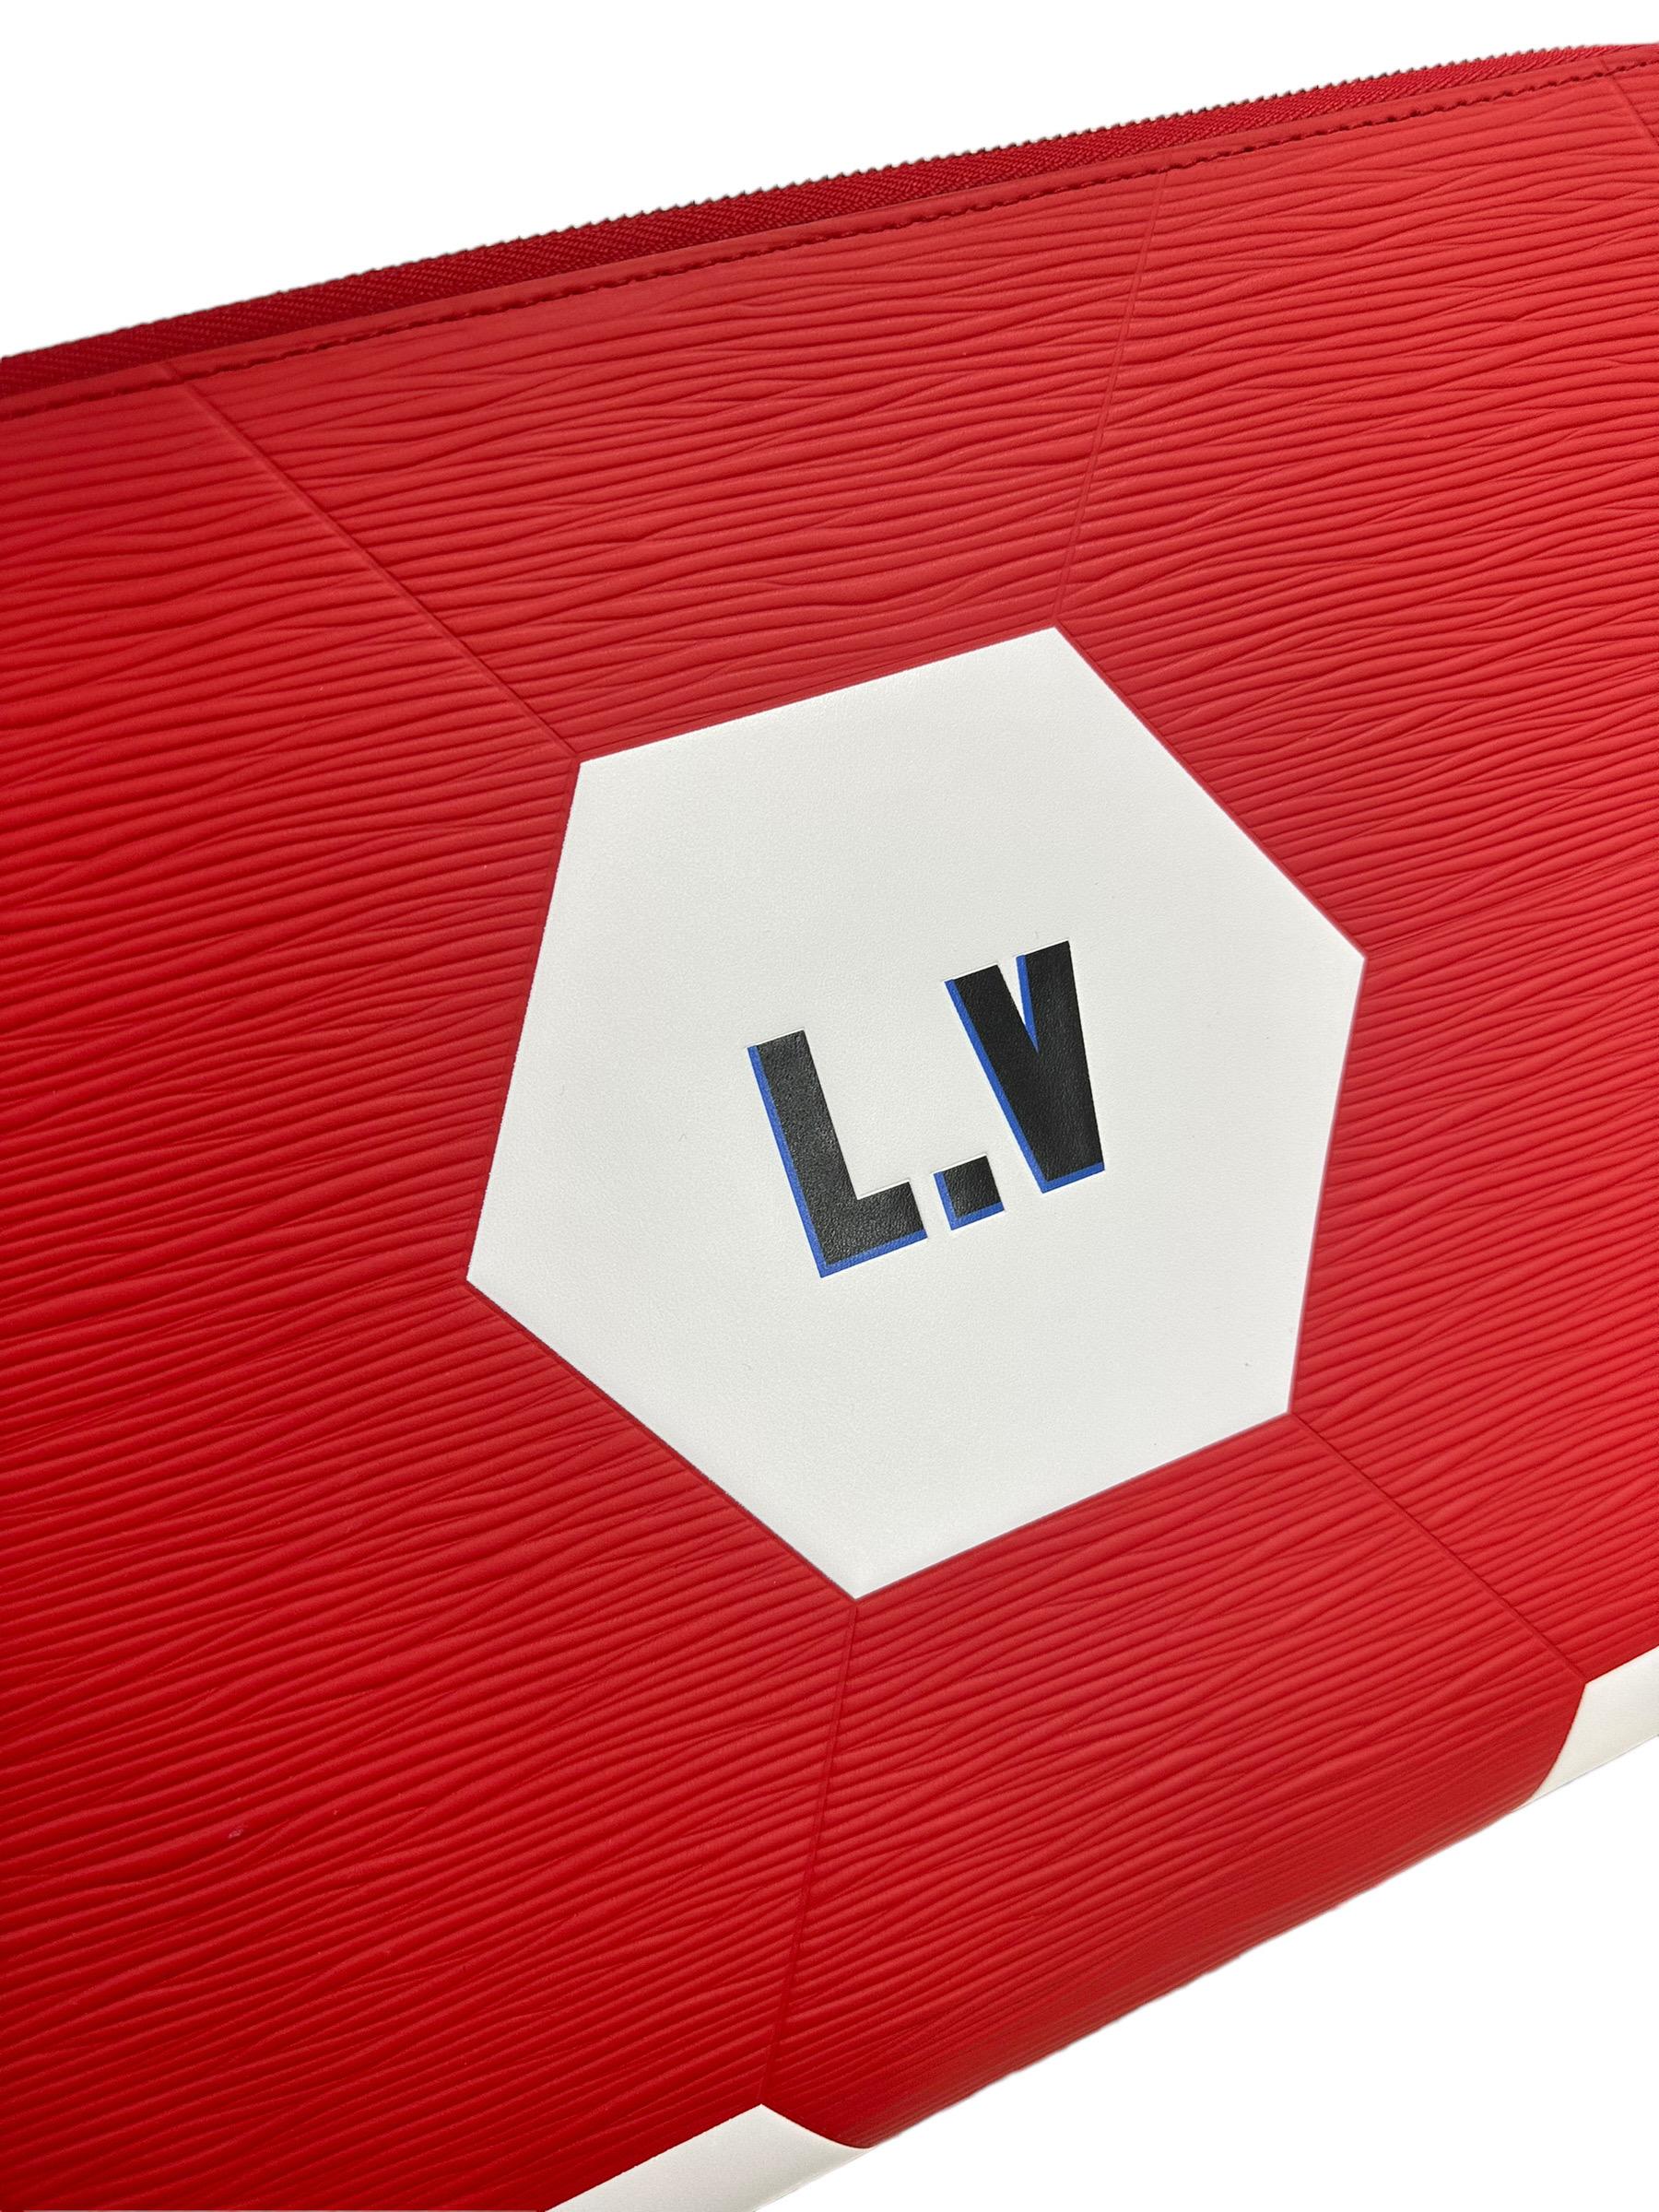 Clutch firmata Louis Vuitton, modello Jour, misura GM, in edizione Limitata FIFA World Cup Russia 2018, realizzata in pelle epi rossa con inserti in pelle liscia bianca e logo nero. Ausgestattet mit einem Verschluss mit Reißverschluss, innen mit